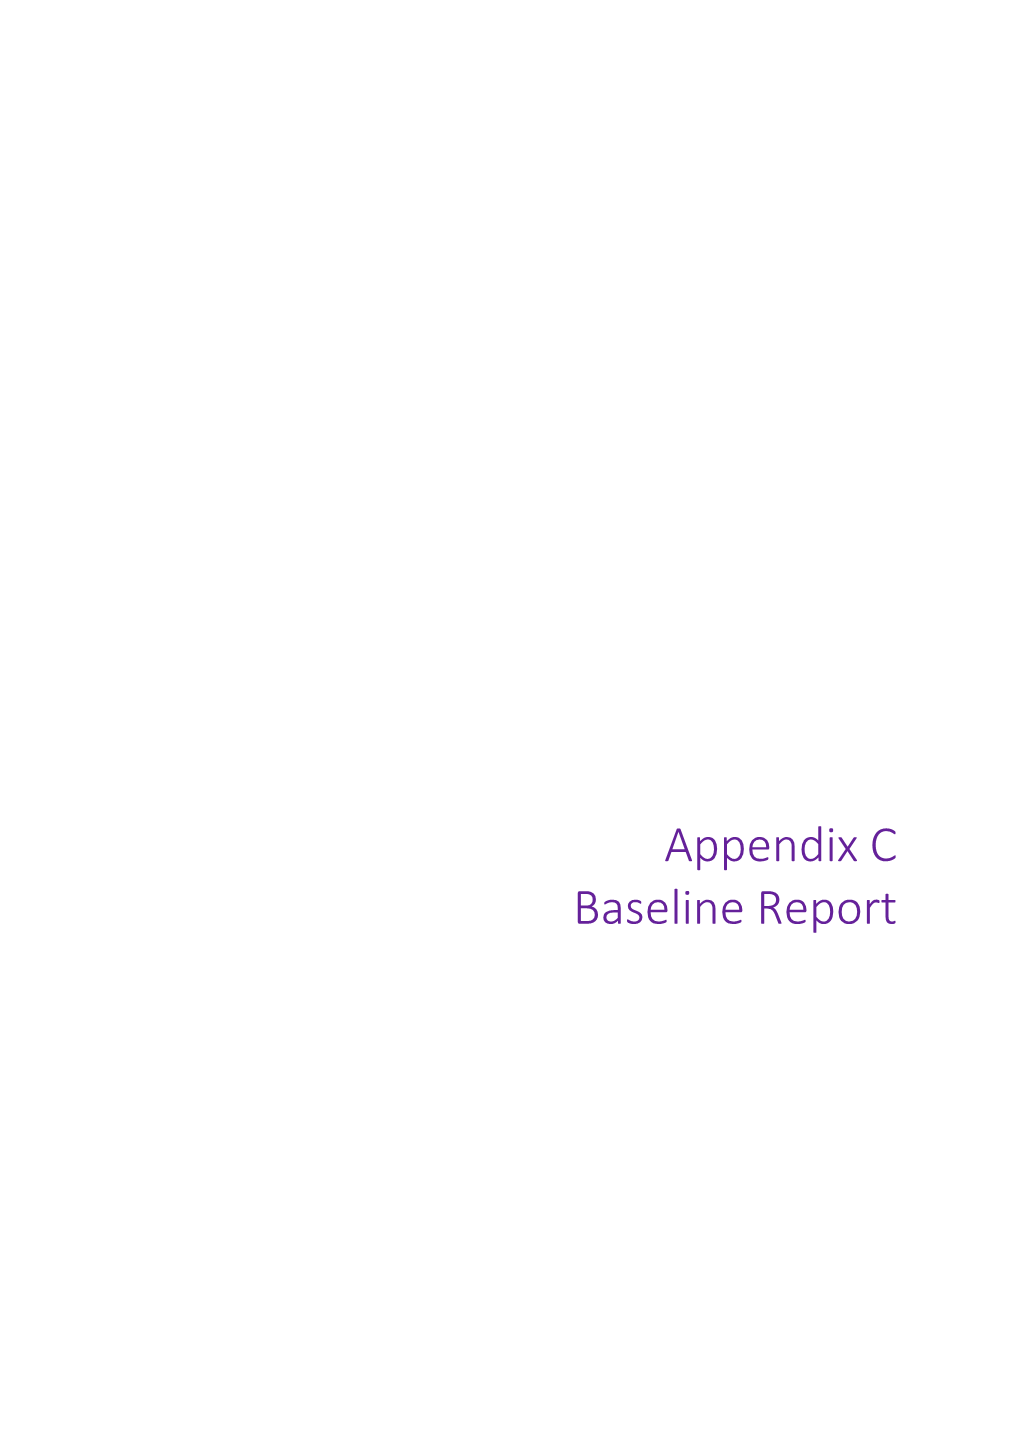 Appendix C Baseline Report